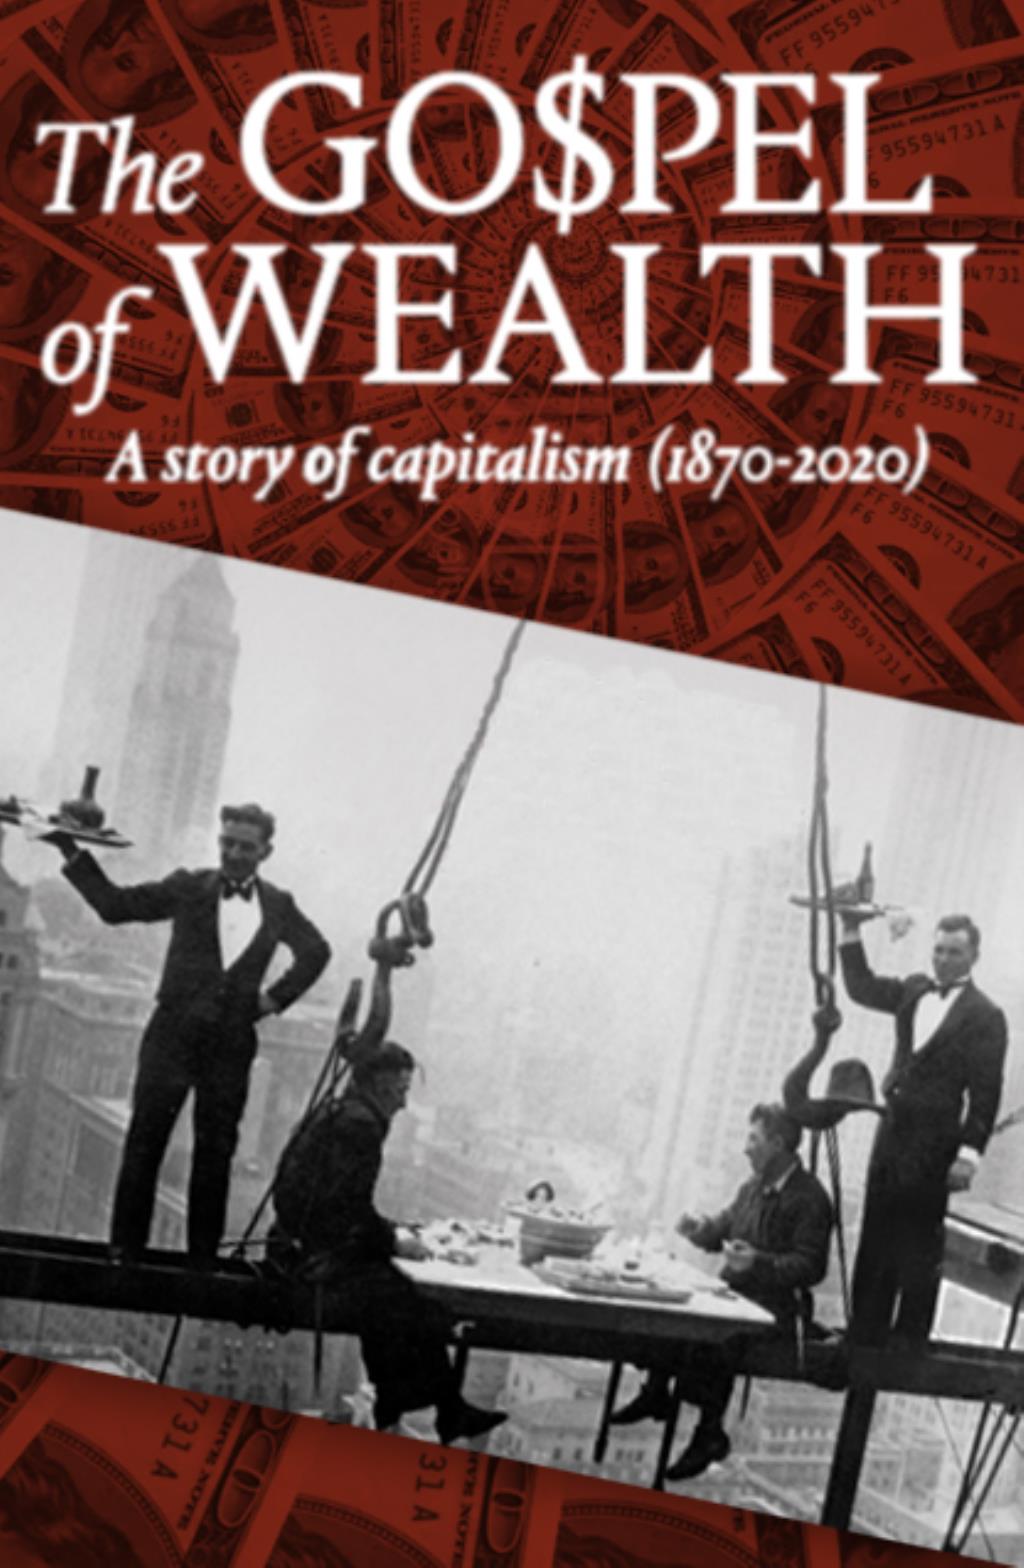 En zengin Amerikalıların %10'u ülkenin kaynaklarının %80'ine sahip. Bu film, Rockefeller'den Bezos'a 150 yılı aşkın bir süredir Amerikan Rüyası’nı sürdürmeye devam eden kapitalizmi inceliyor. 
Kültür, reklamcılık, halkla ilişkiler ve hepsinden öte hayırseverlik, eşitsizliklere rağmen Amerikan ruhunu beslemeye devam eden gerçek bir zenginlik müjdesinin silahları. Ama ne zamana kadar?
Kuruluşundan bu yana, Birleşik Devletler kapitalizmin kendi ‘Vaat Edilmiş Toprakları’ olmuştur. Ancak servet birikimi, kendileri multimilyoner olan kurucu babaların da dediği gibi, demokrasi uğruna olamaz. Eşitsizliğin çok fazla olması kaos riskini artırır. Sermayeye karşı demokrasi: tam bir Amerikan denklemi.
